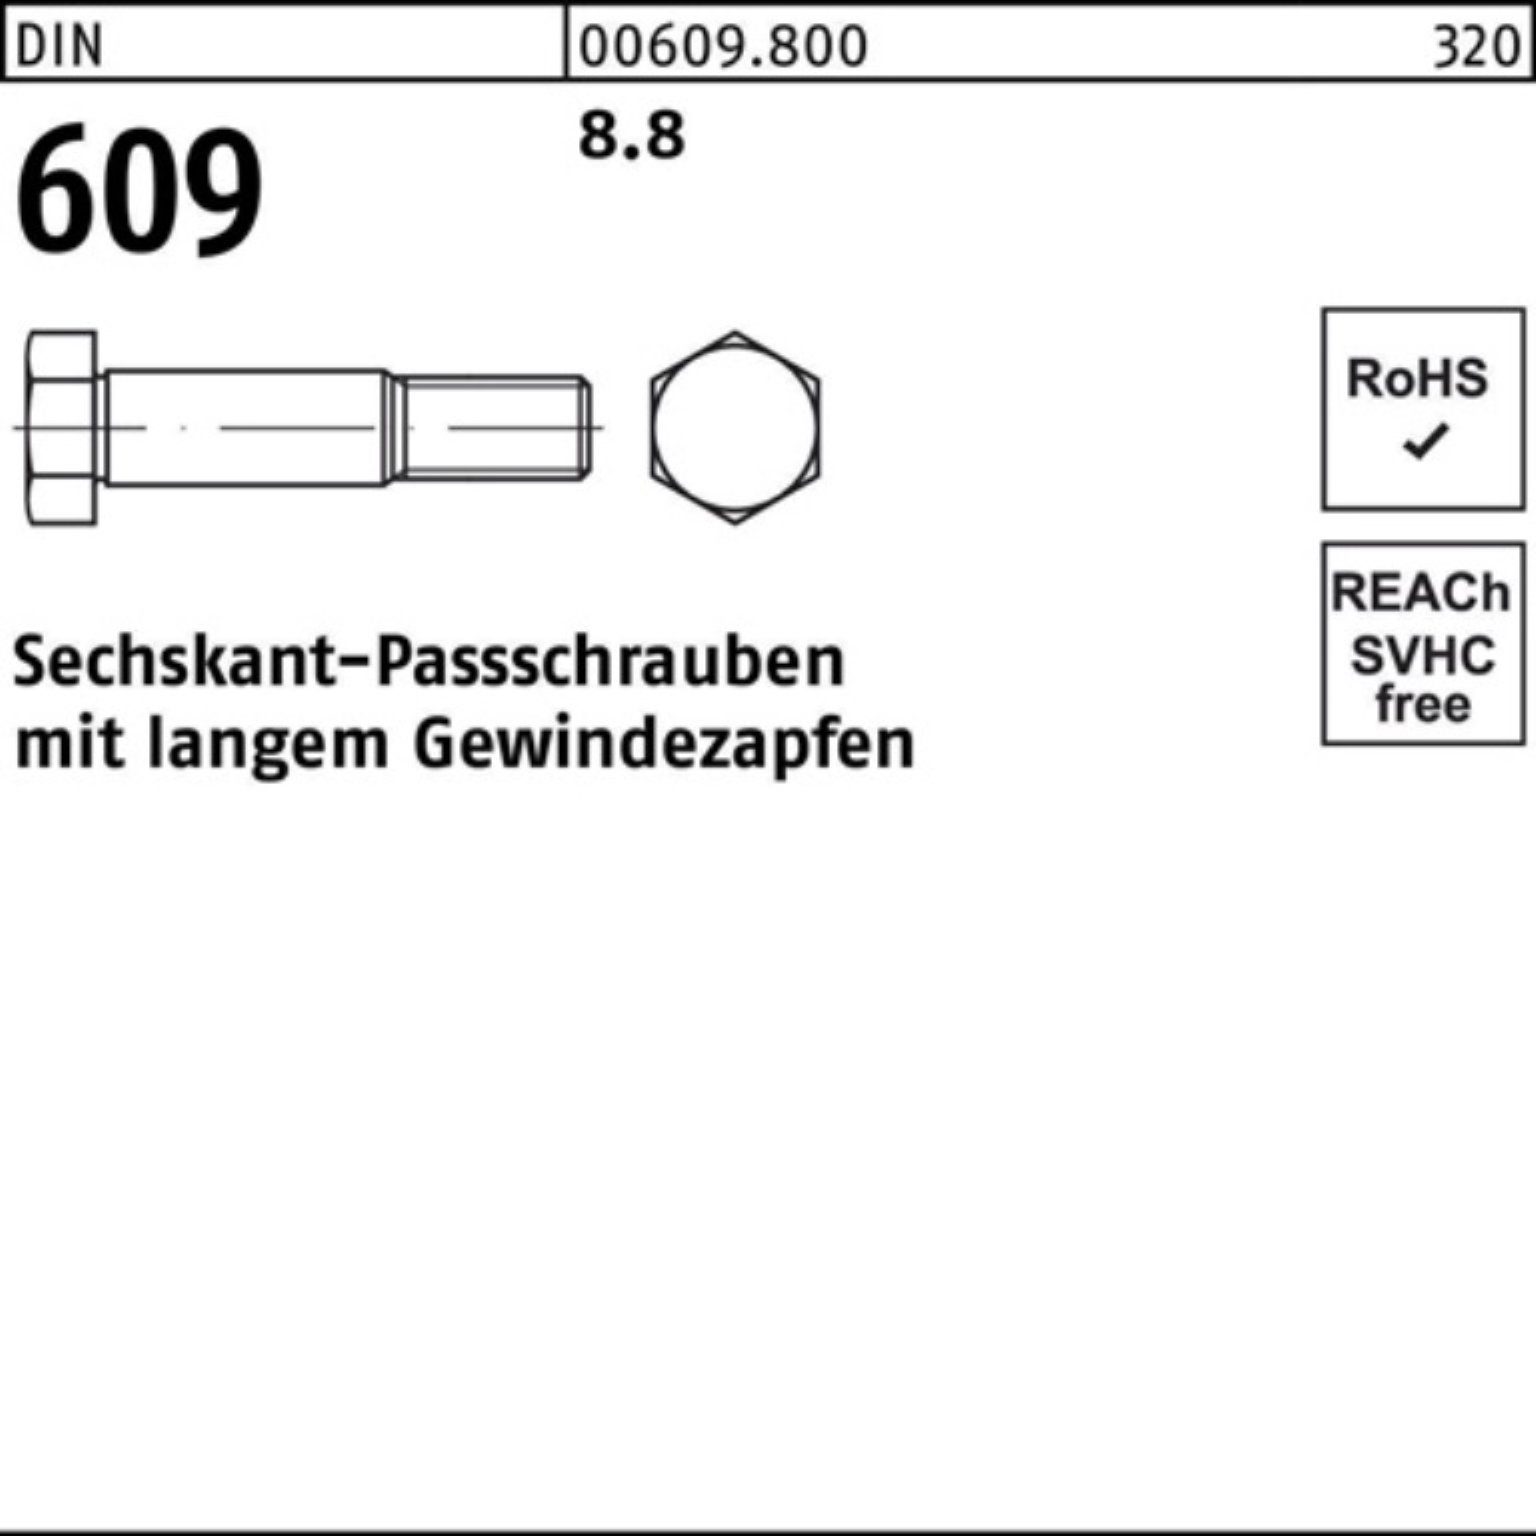 Sechskantpassschraube Reyher Pack 85 Gewindezapfen langem Schraube 609 DIN M16x 100er